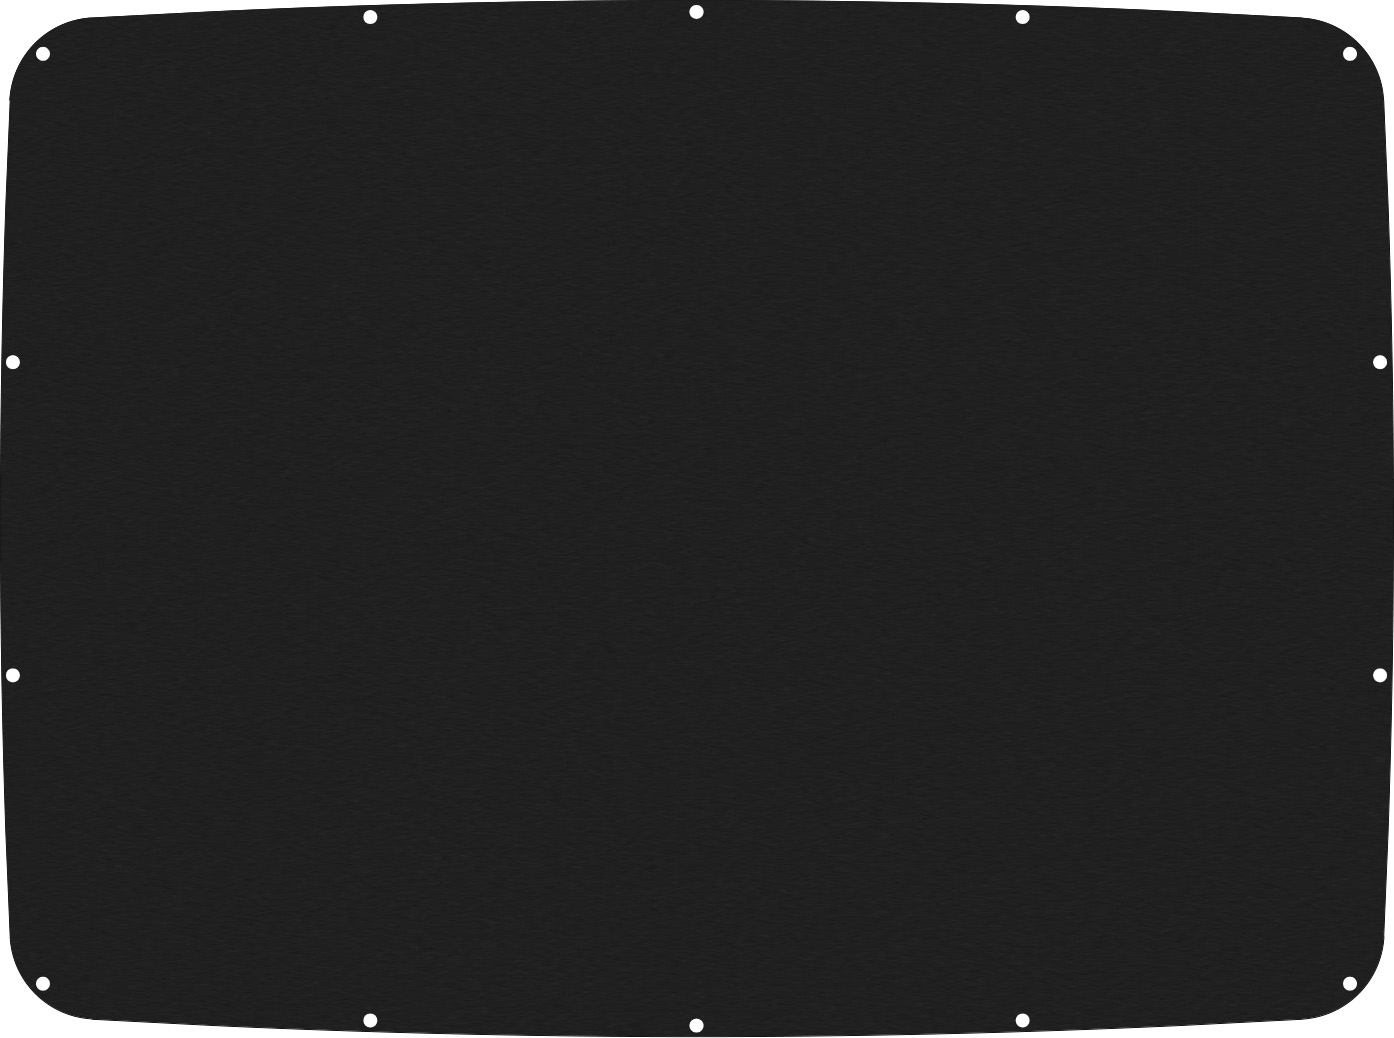 Black&nbsp;Anodized&nbsp;Aluminum Seahorse SE520/540 Lid Panel